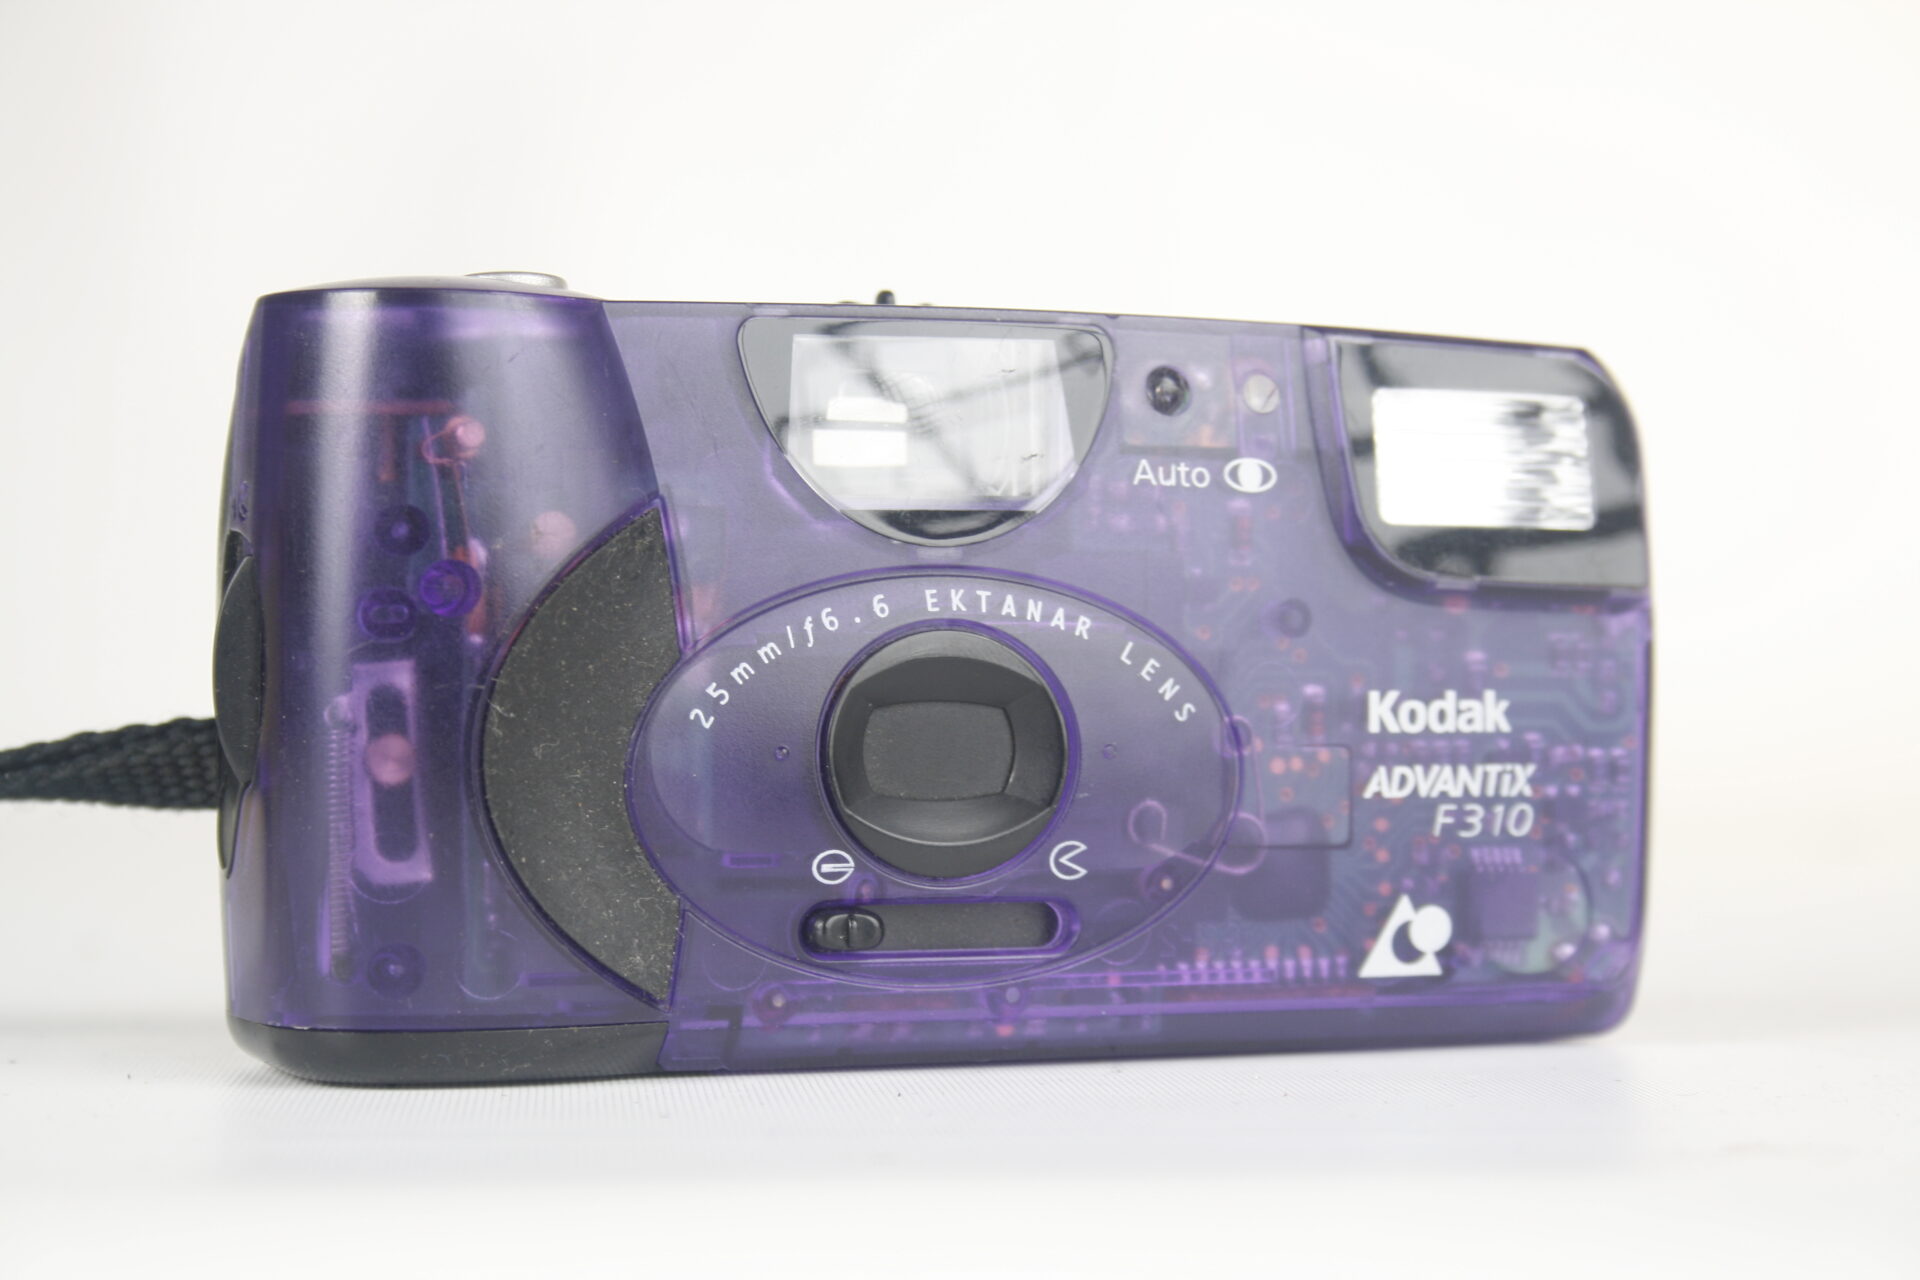 Kodak Advantix F310. 200 speed film cartridge. 1997. USA